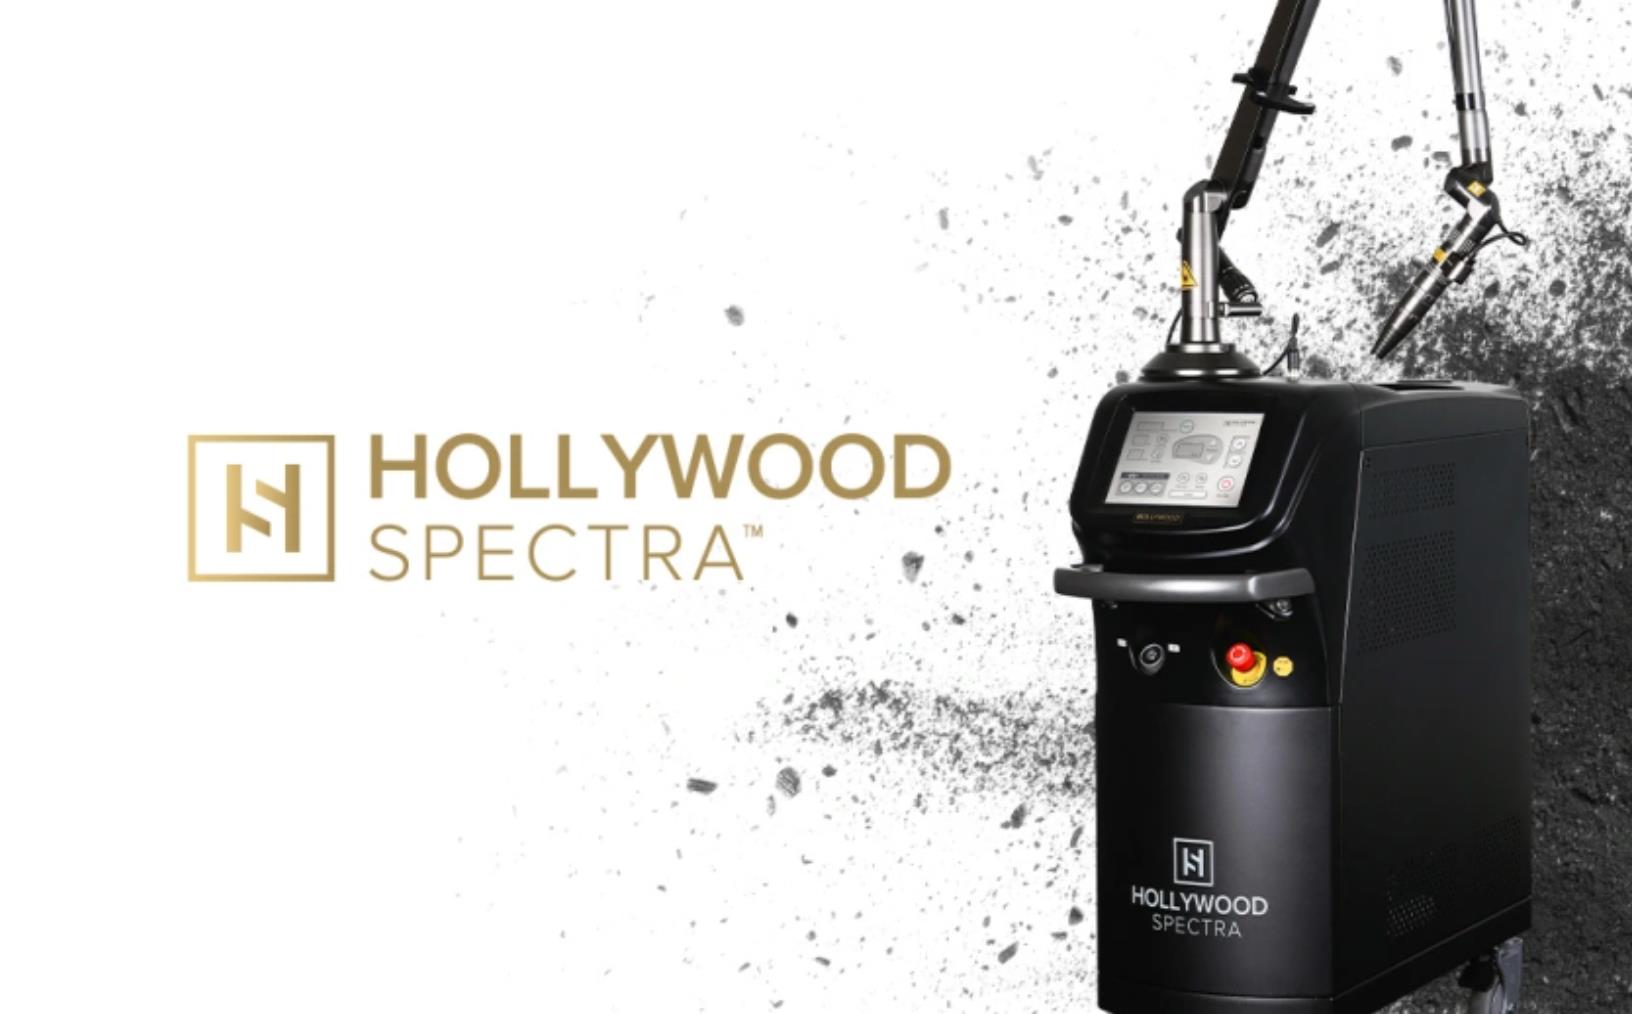 Đón đầu xu hướng trị nám năm 2023 với công nghệ Hollywood Spectra - Ảnh 1.